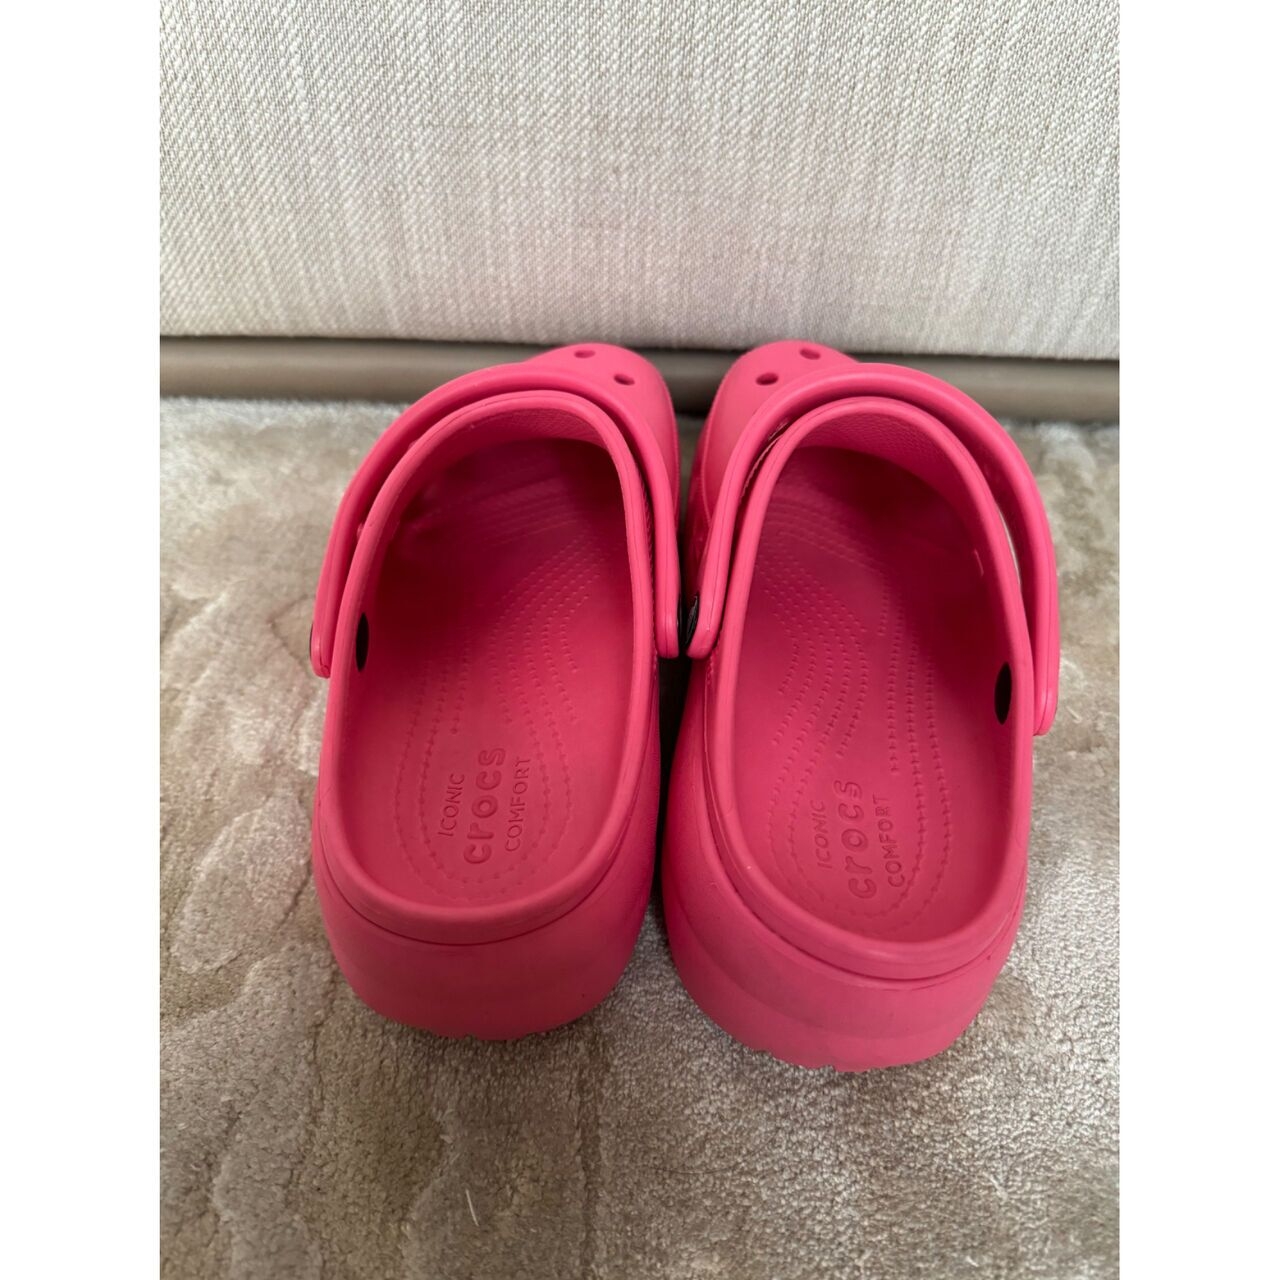 Crocs Pink Sandals